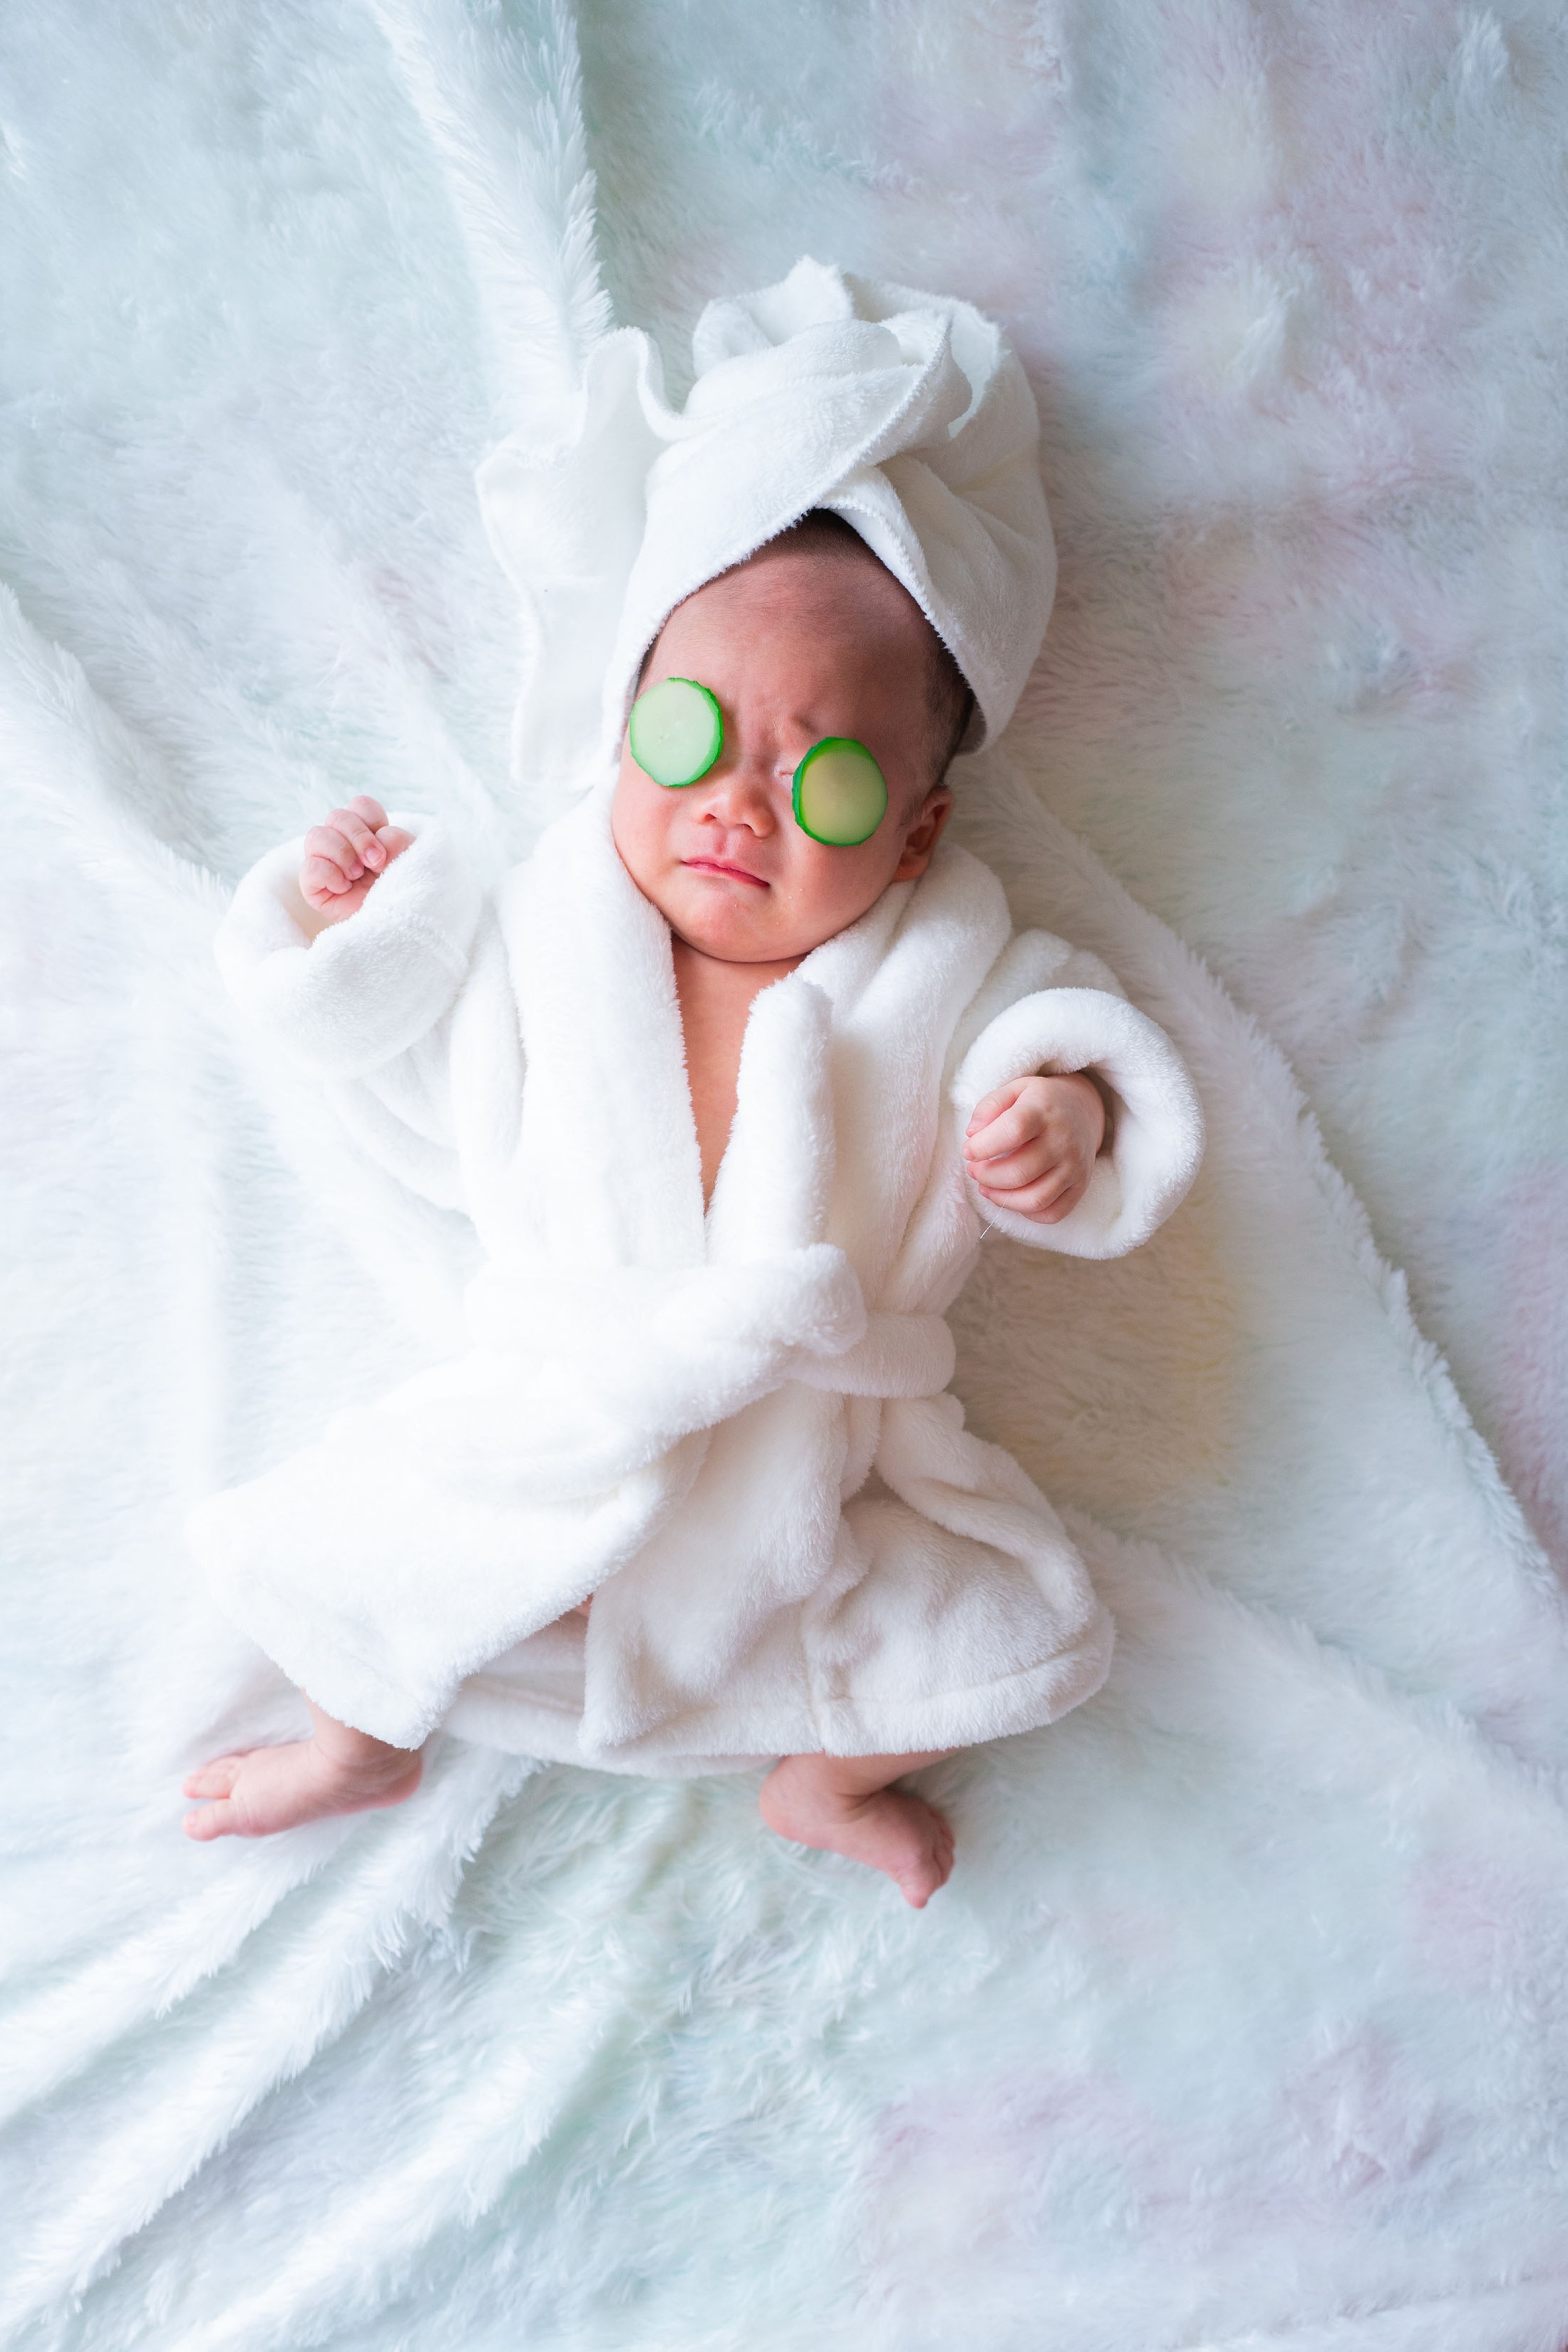 Bebeklerin bile biraz cilt bakımına ihtiyacı vardır.  (Shutterstock Fotoğrafı)